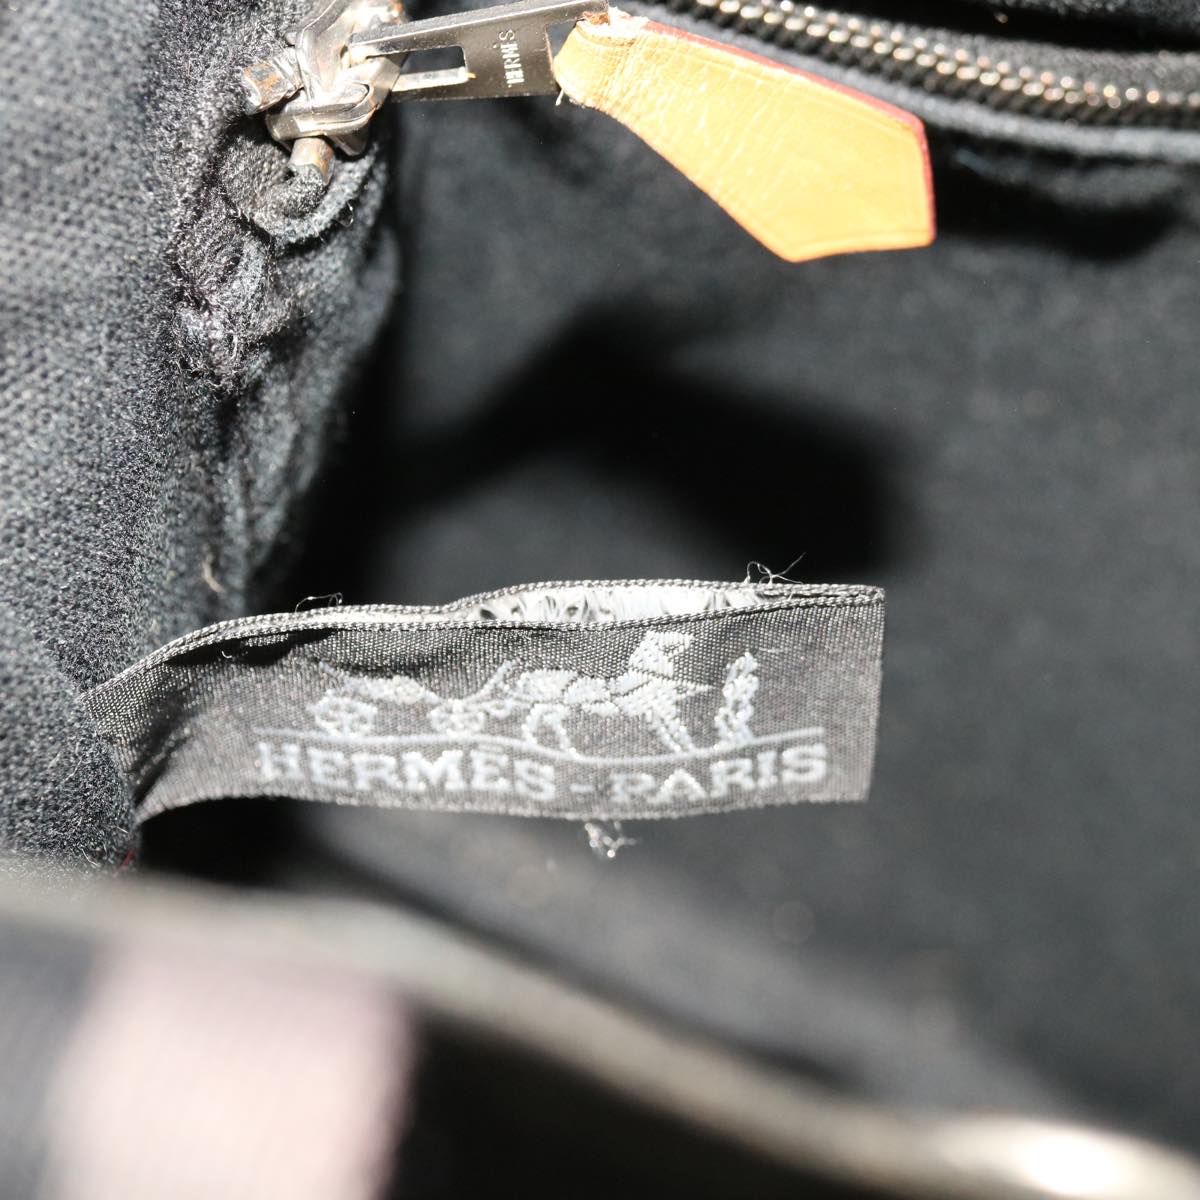 HERMES Fourre ToutPM Hand Bag Canvas Black Gray Auth bs11834